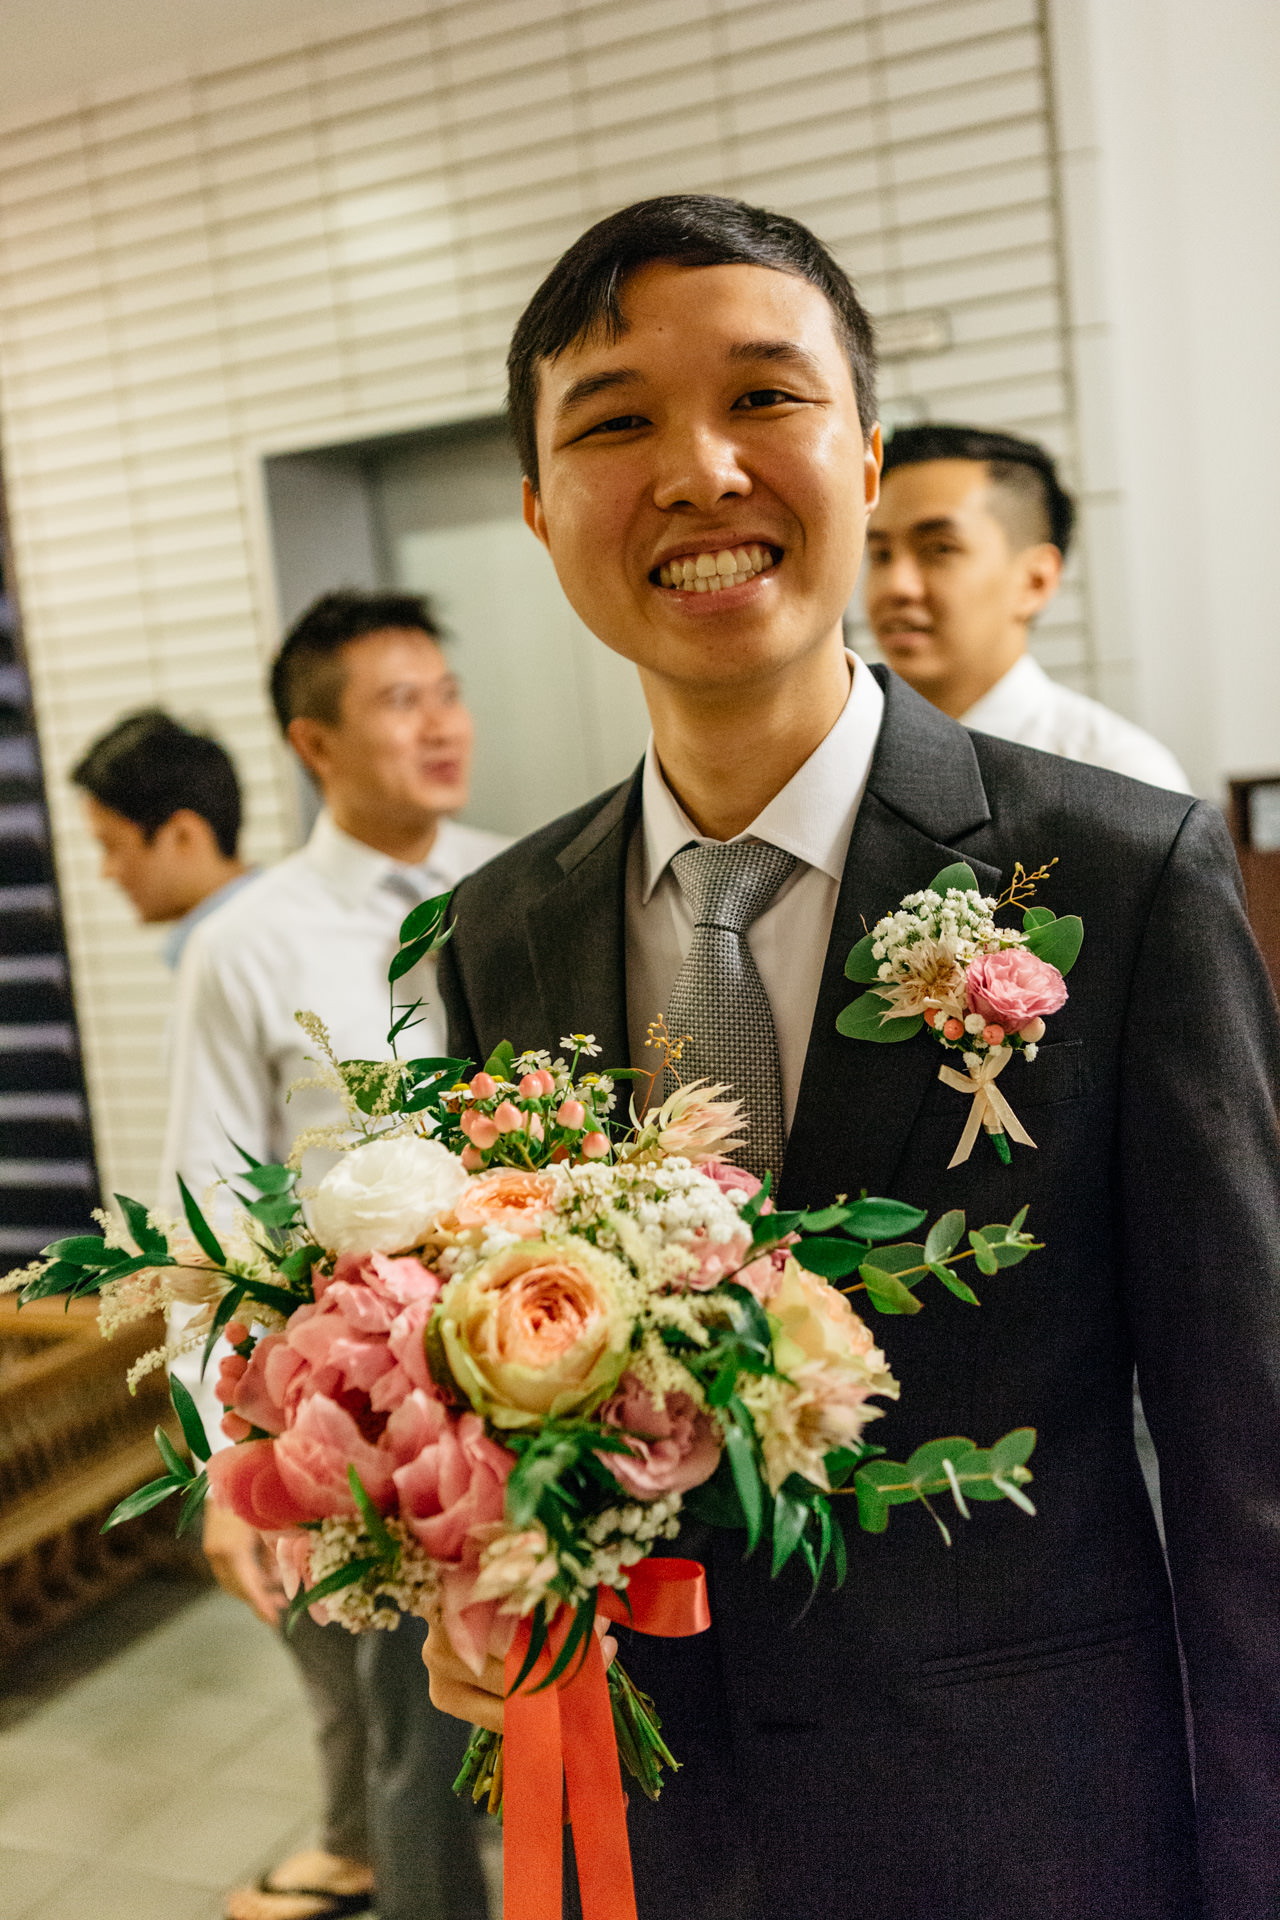 singapore wedding